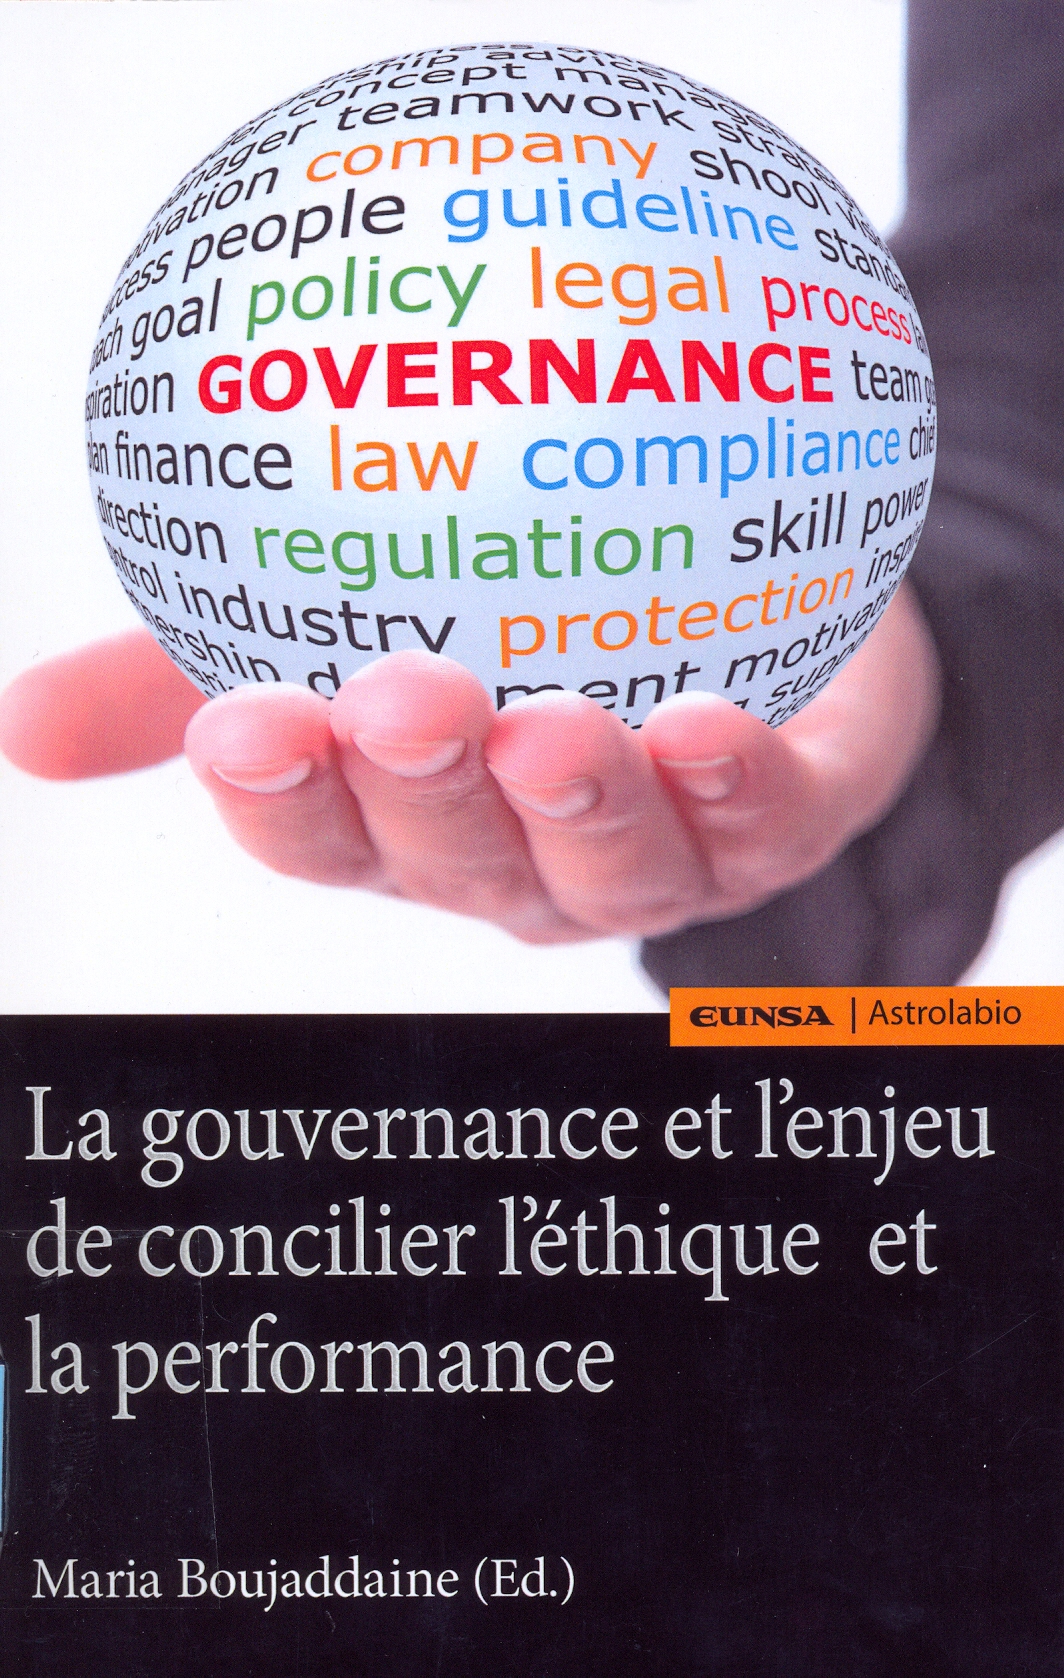 Imagen de portada del libro La gouvernance et l'enjeu de concilier l'éthique et la performance